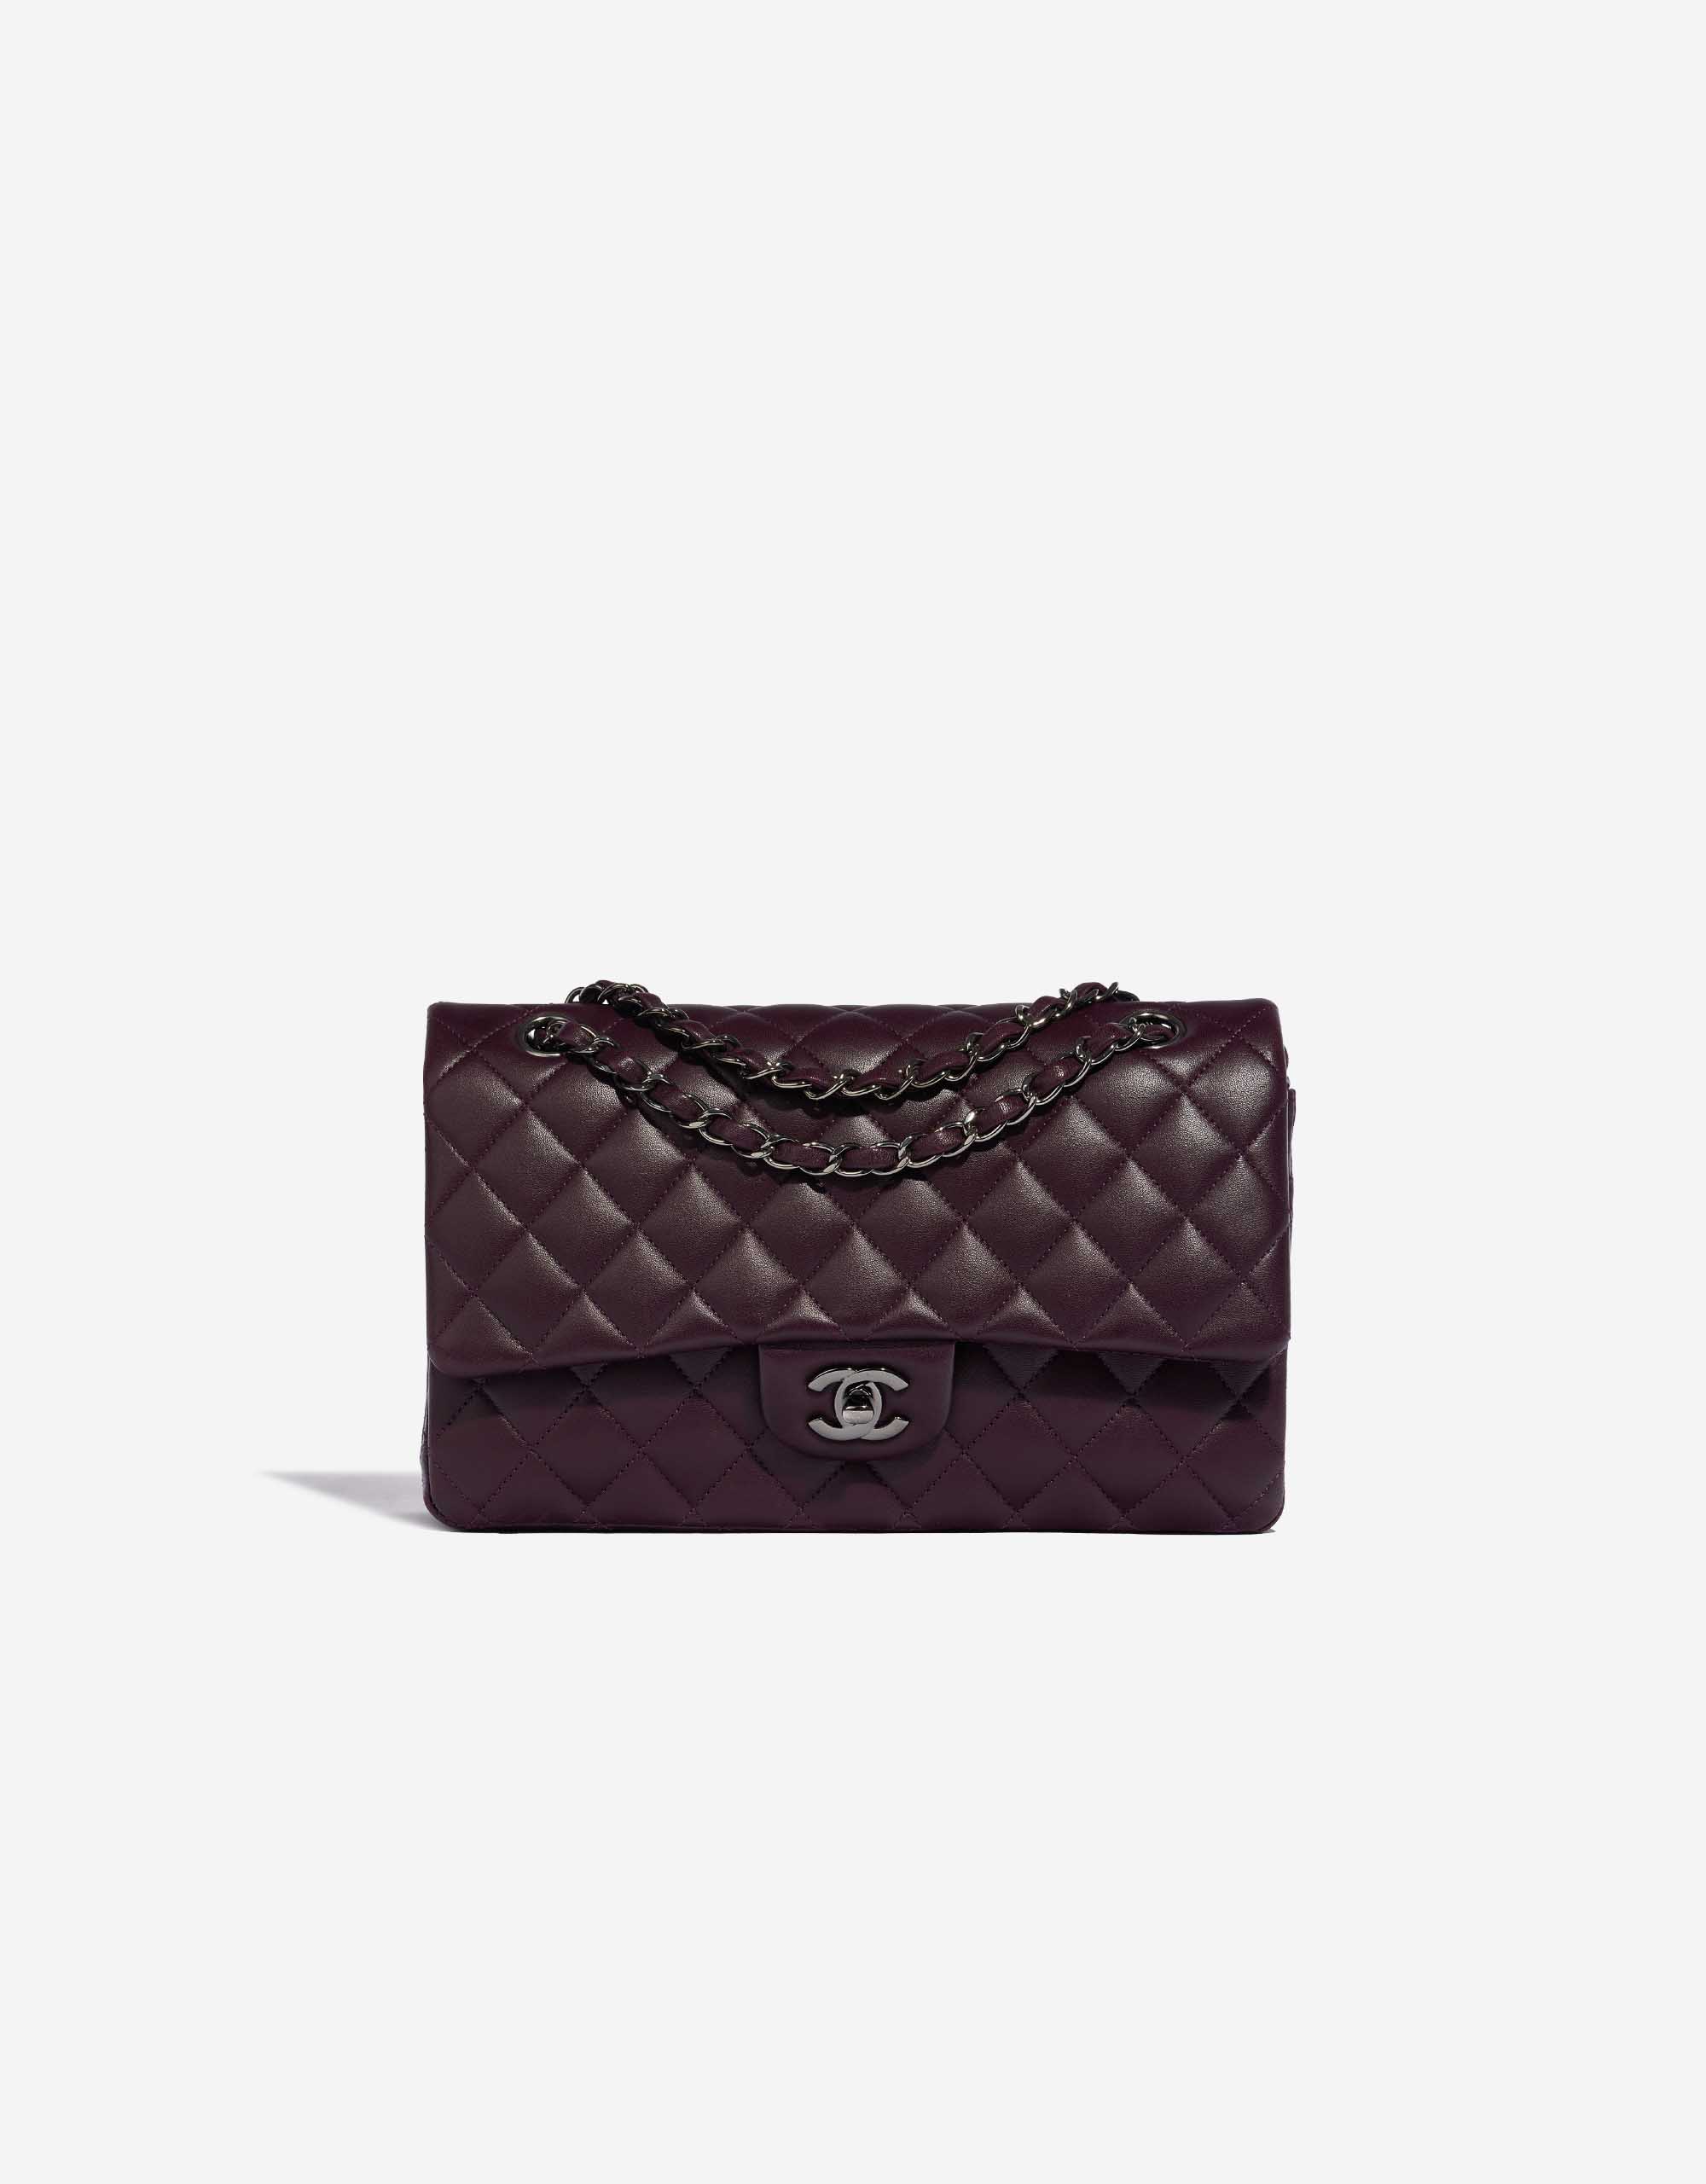 Chanel Purple Vintage Overnight Duffel Bag  Bags, Brown leather shoulder  bag, Chanel bag